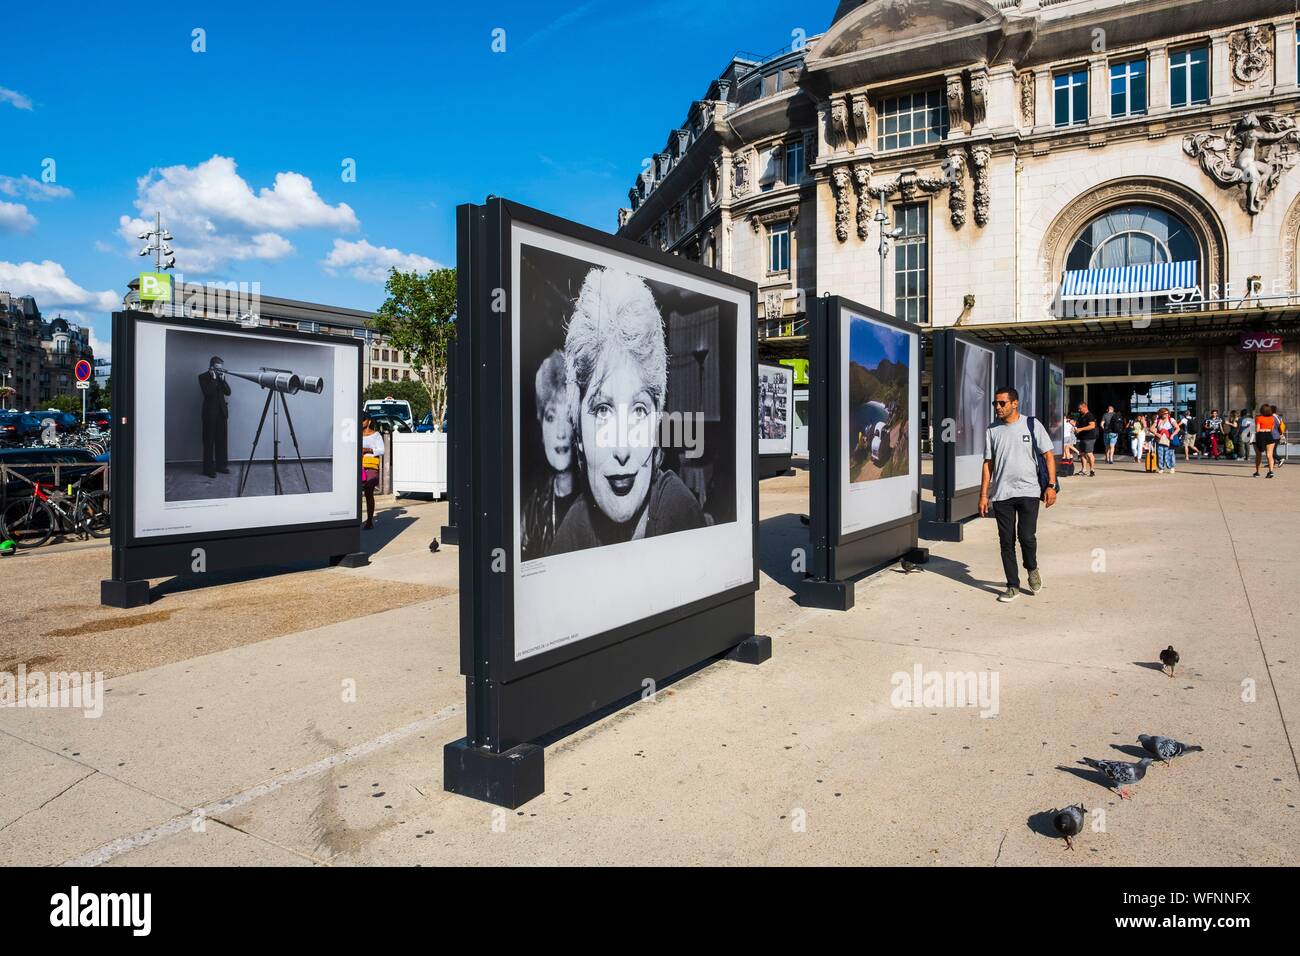 Francia, Parigi, stazione ferroviaria Gare de Lyon, la piazza, un open-air mostra fotografica Foto Stock